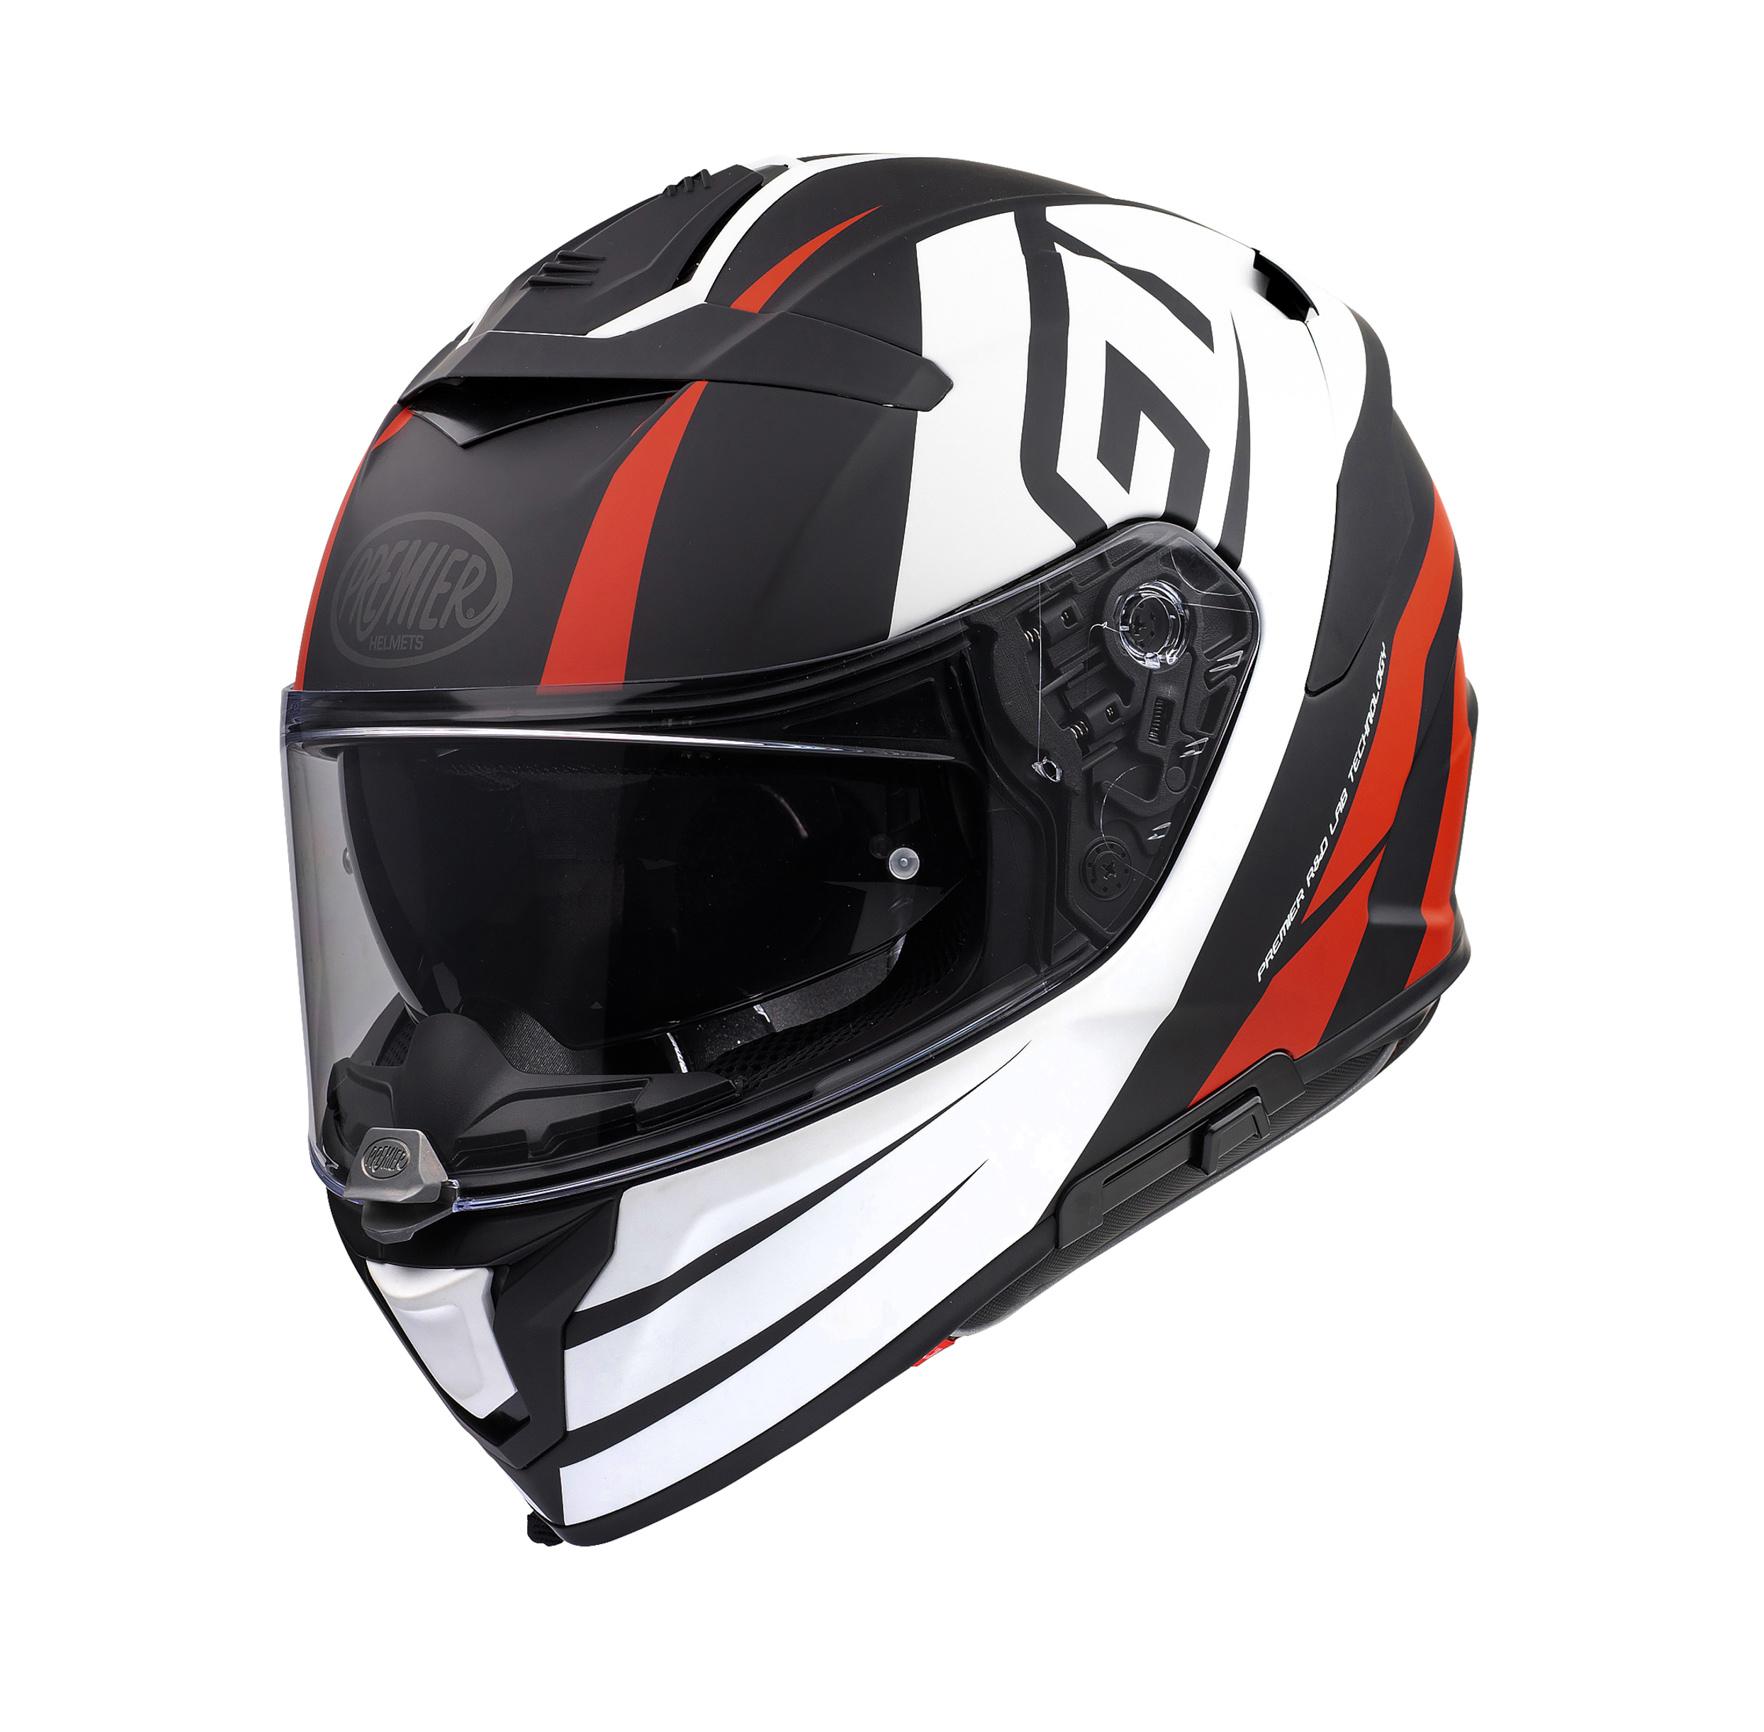 Premier Devil Gt Full Face Motorcycle Helmet - Black/White, M